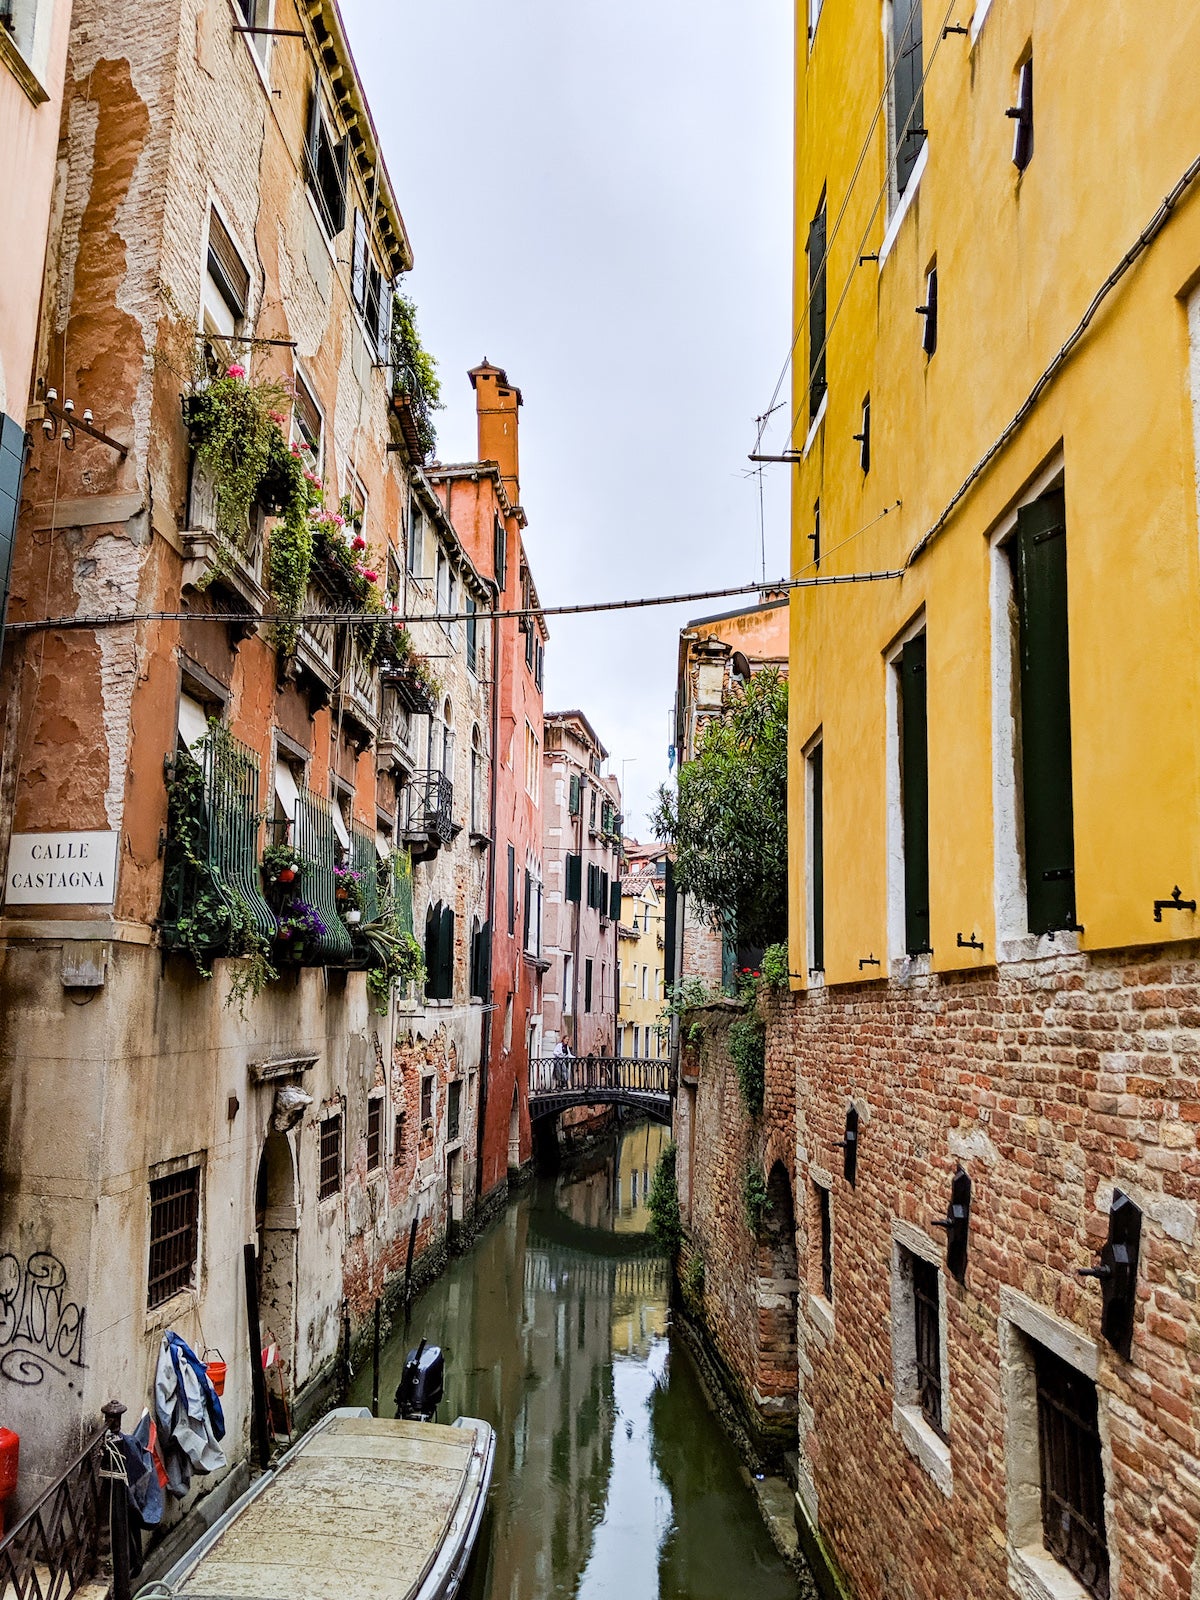 View down an Italian canal